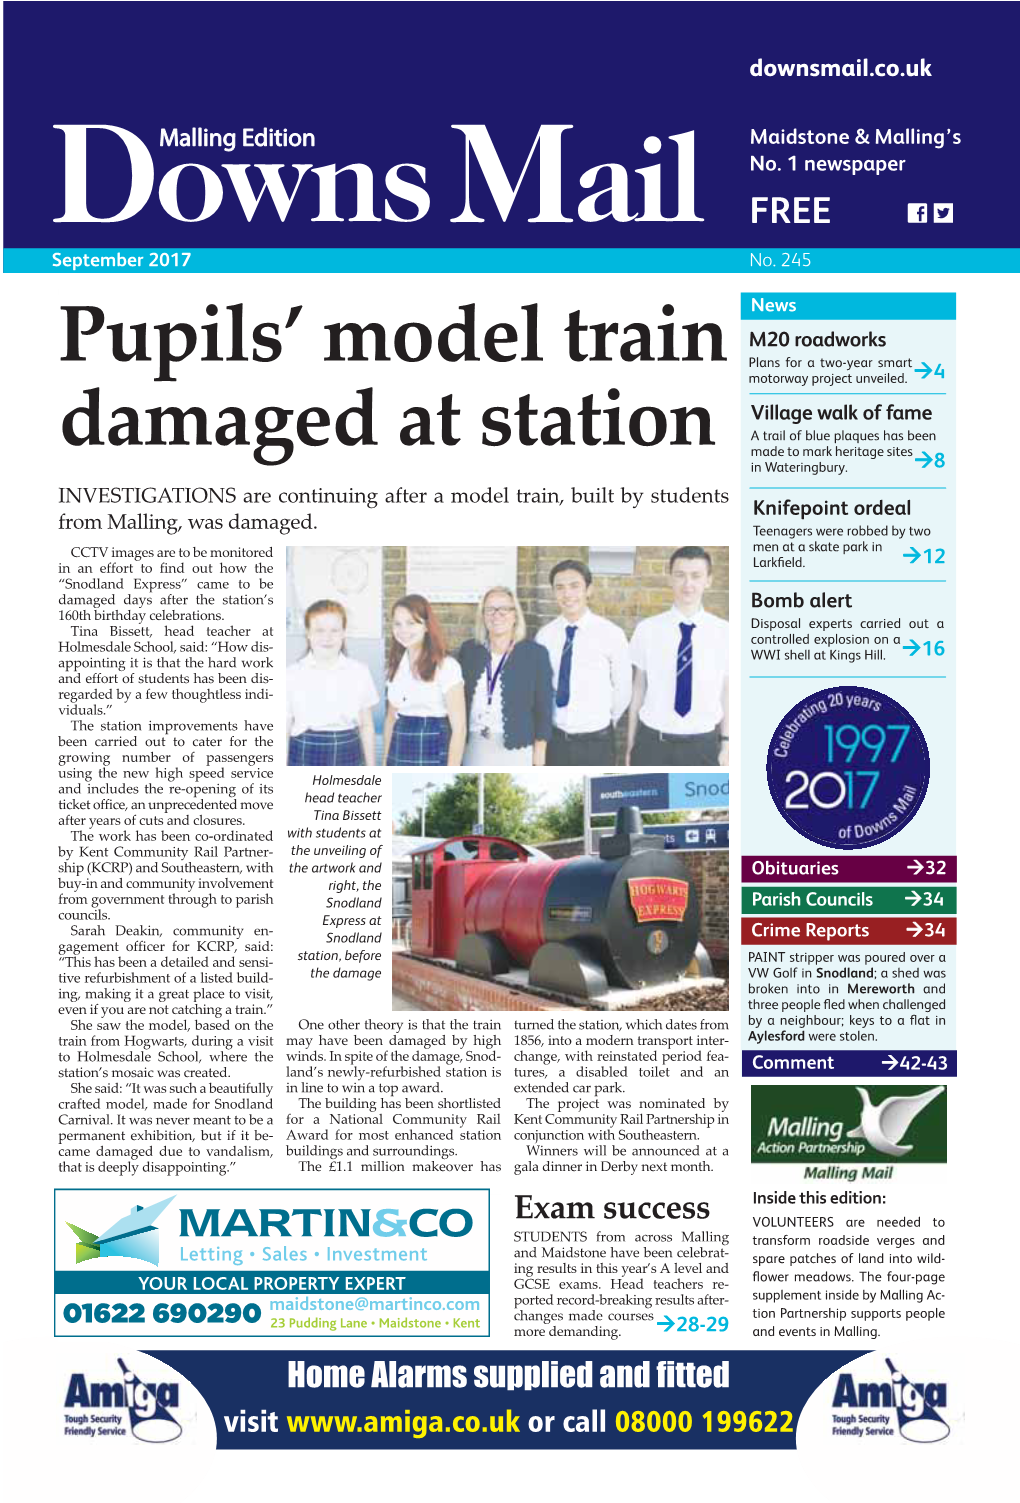 Pupils' Model Train Damaged at Station